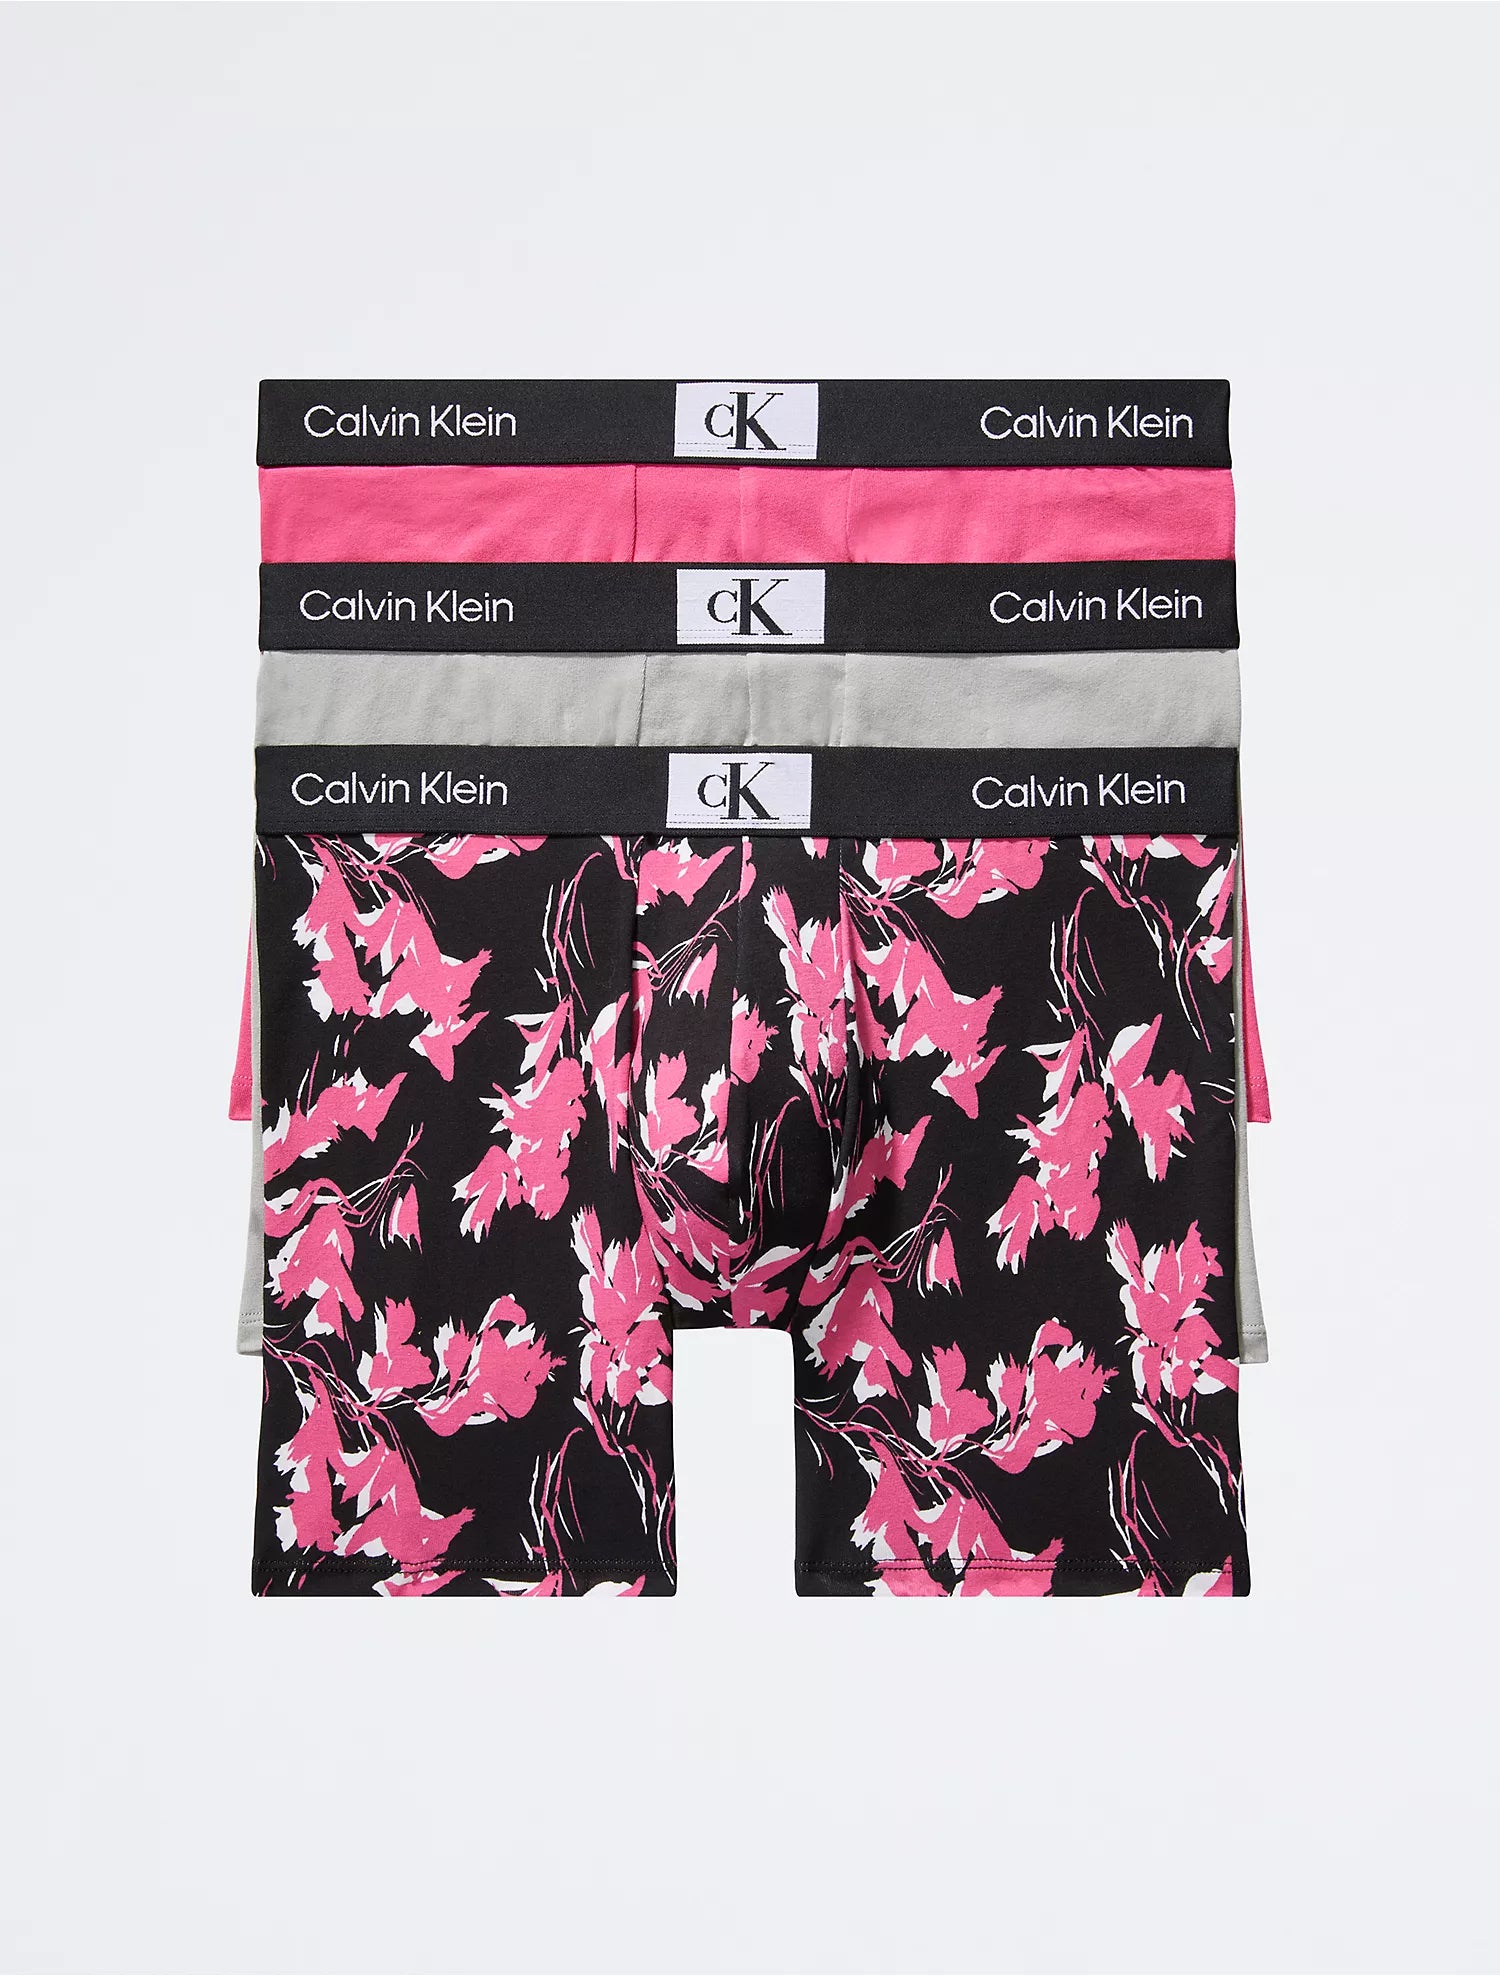 Calvin Klein Calvin Klein 1996 3-Pack Cotton Stretch Boxer Brief - Men